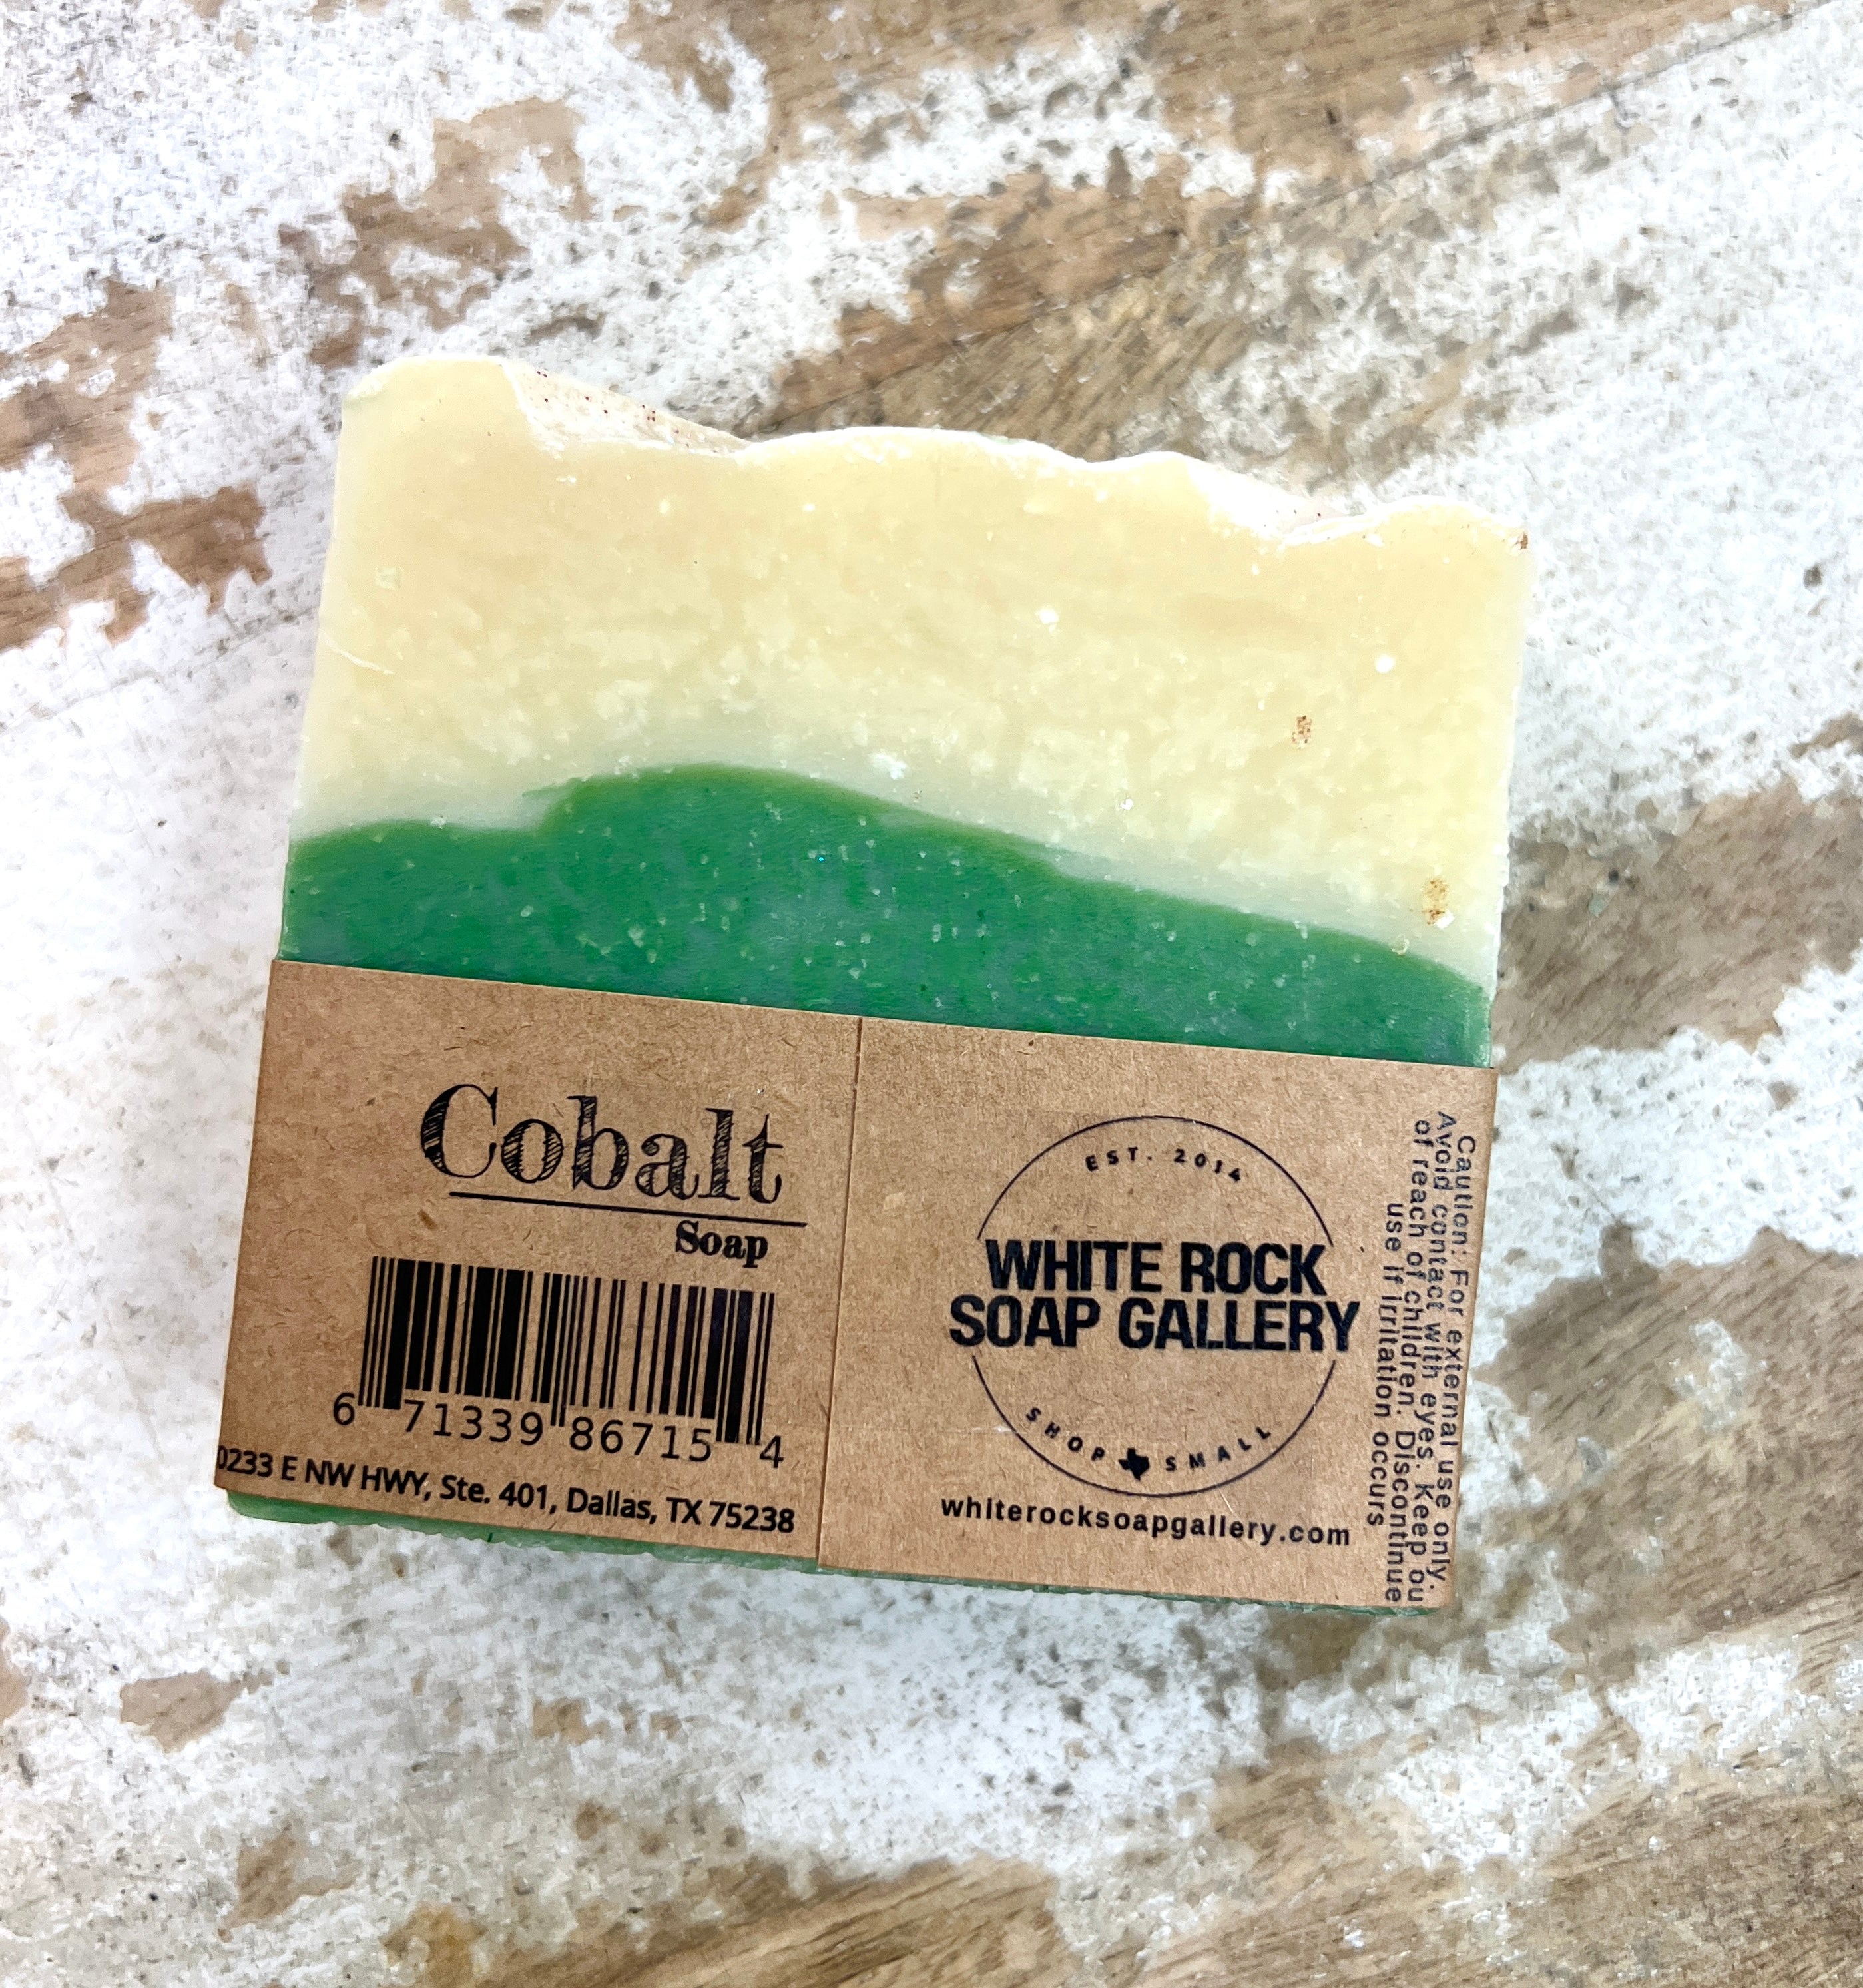 Jabón de cobalto no. 12.25 - Mañana de Navidad